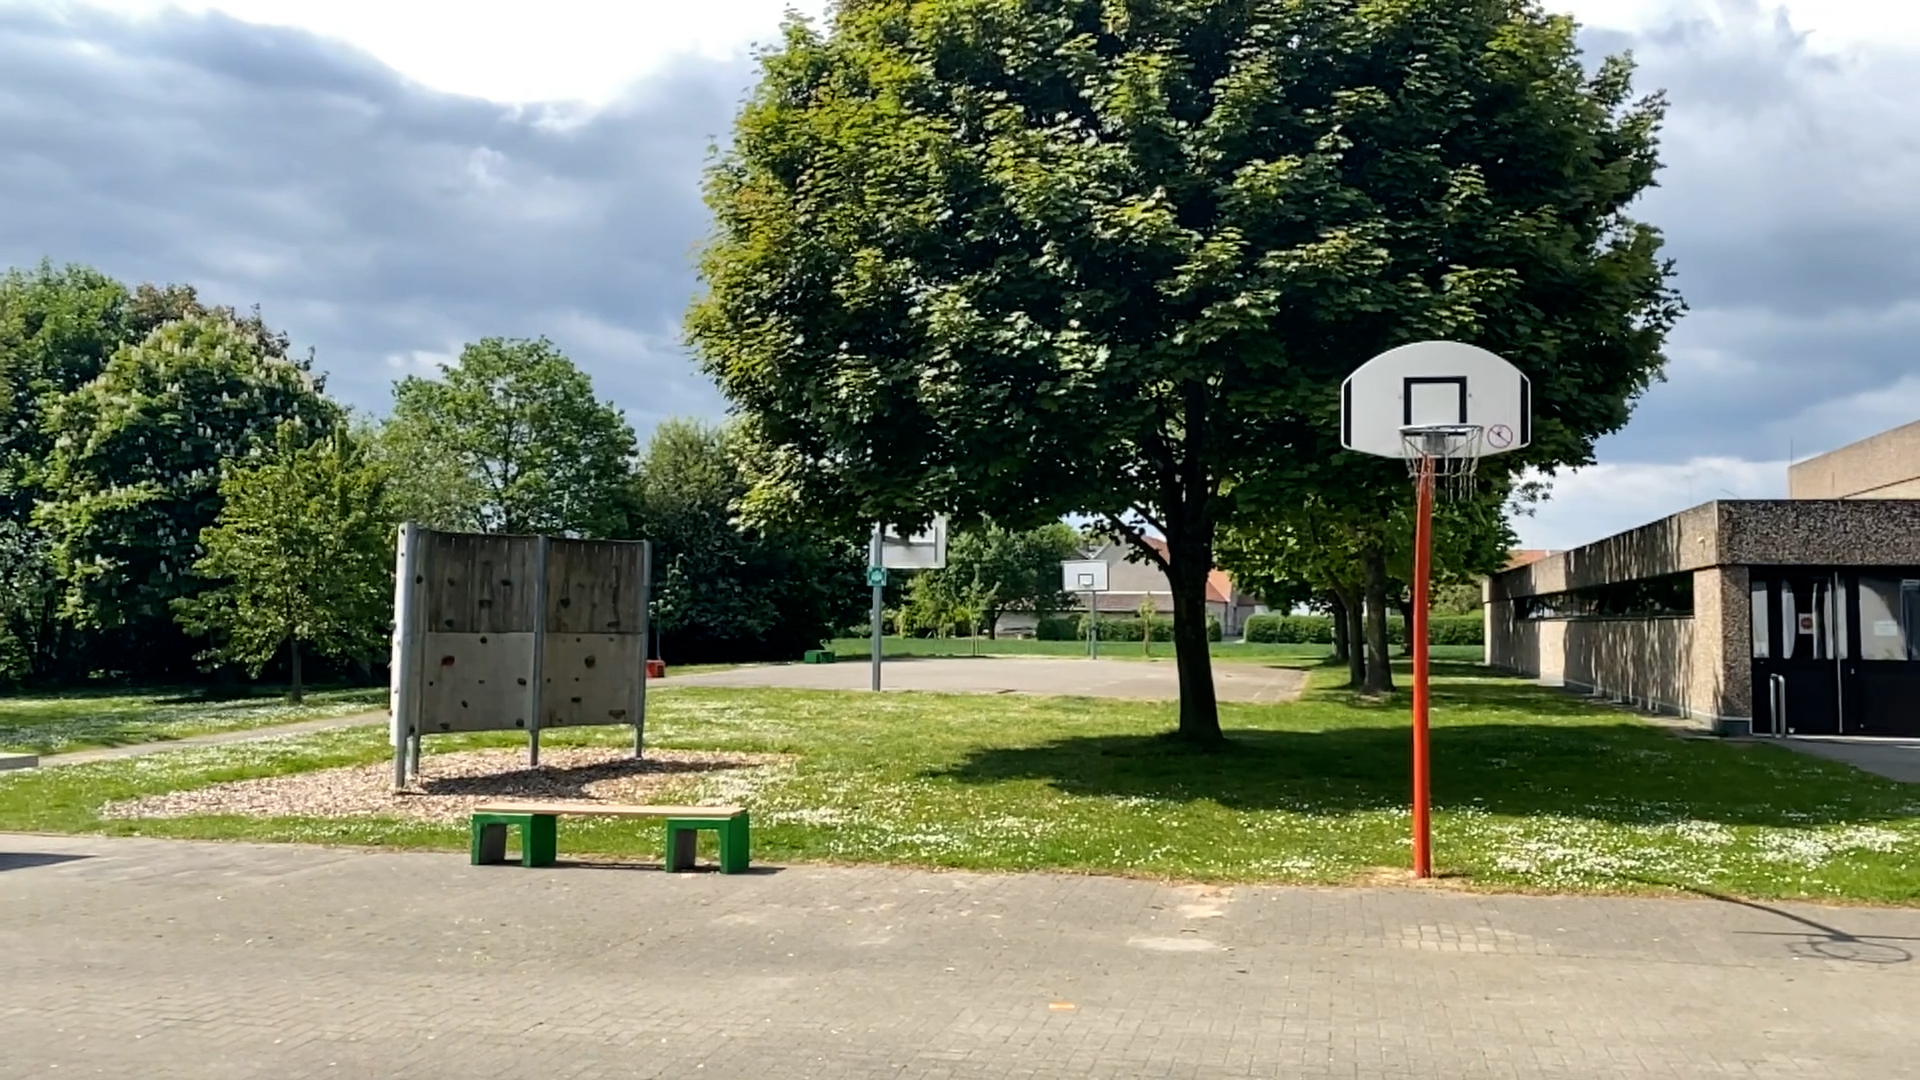 Das Bild zeigt einen Sportplatz mit Basketballkorb, Beachvolleyballfeld und Kletterwand. In der Mitte steht ein Baum, daneben eine Sporthalle.